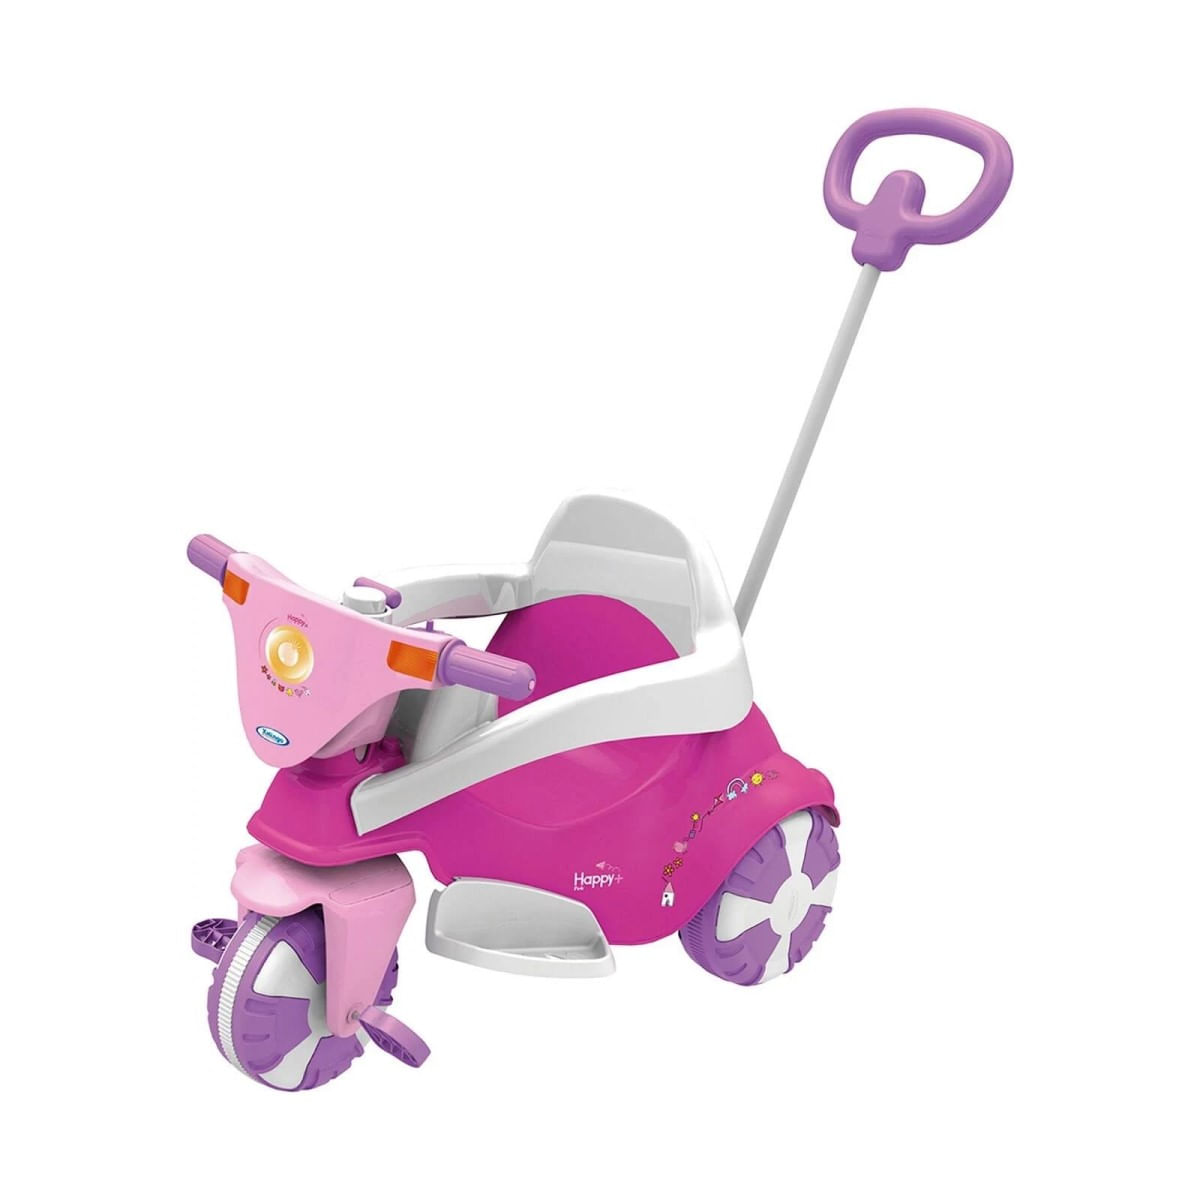 Mami Brinquedos - Black Friday Promoção - Triciclo Infantil Cachorrinho  Xalingo Pedal com Empurrador